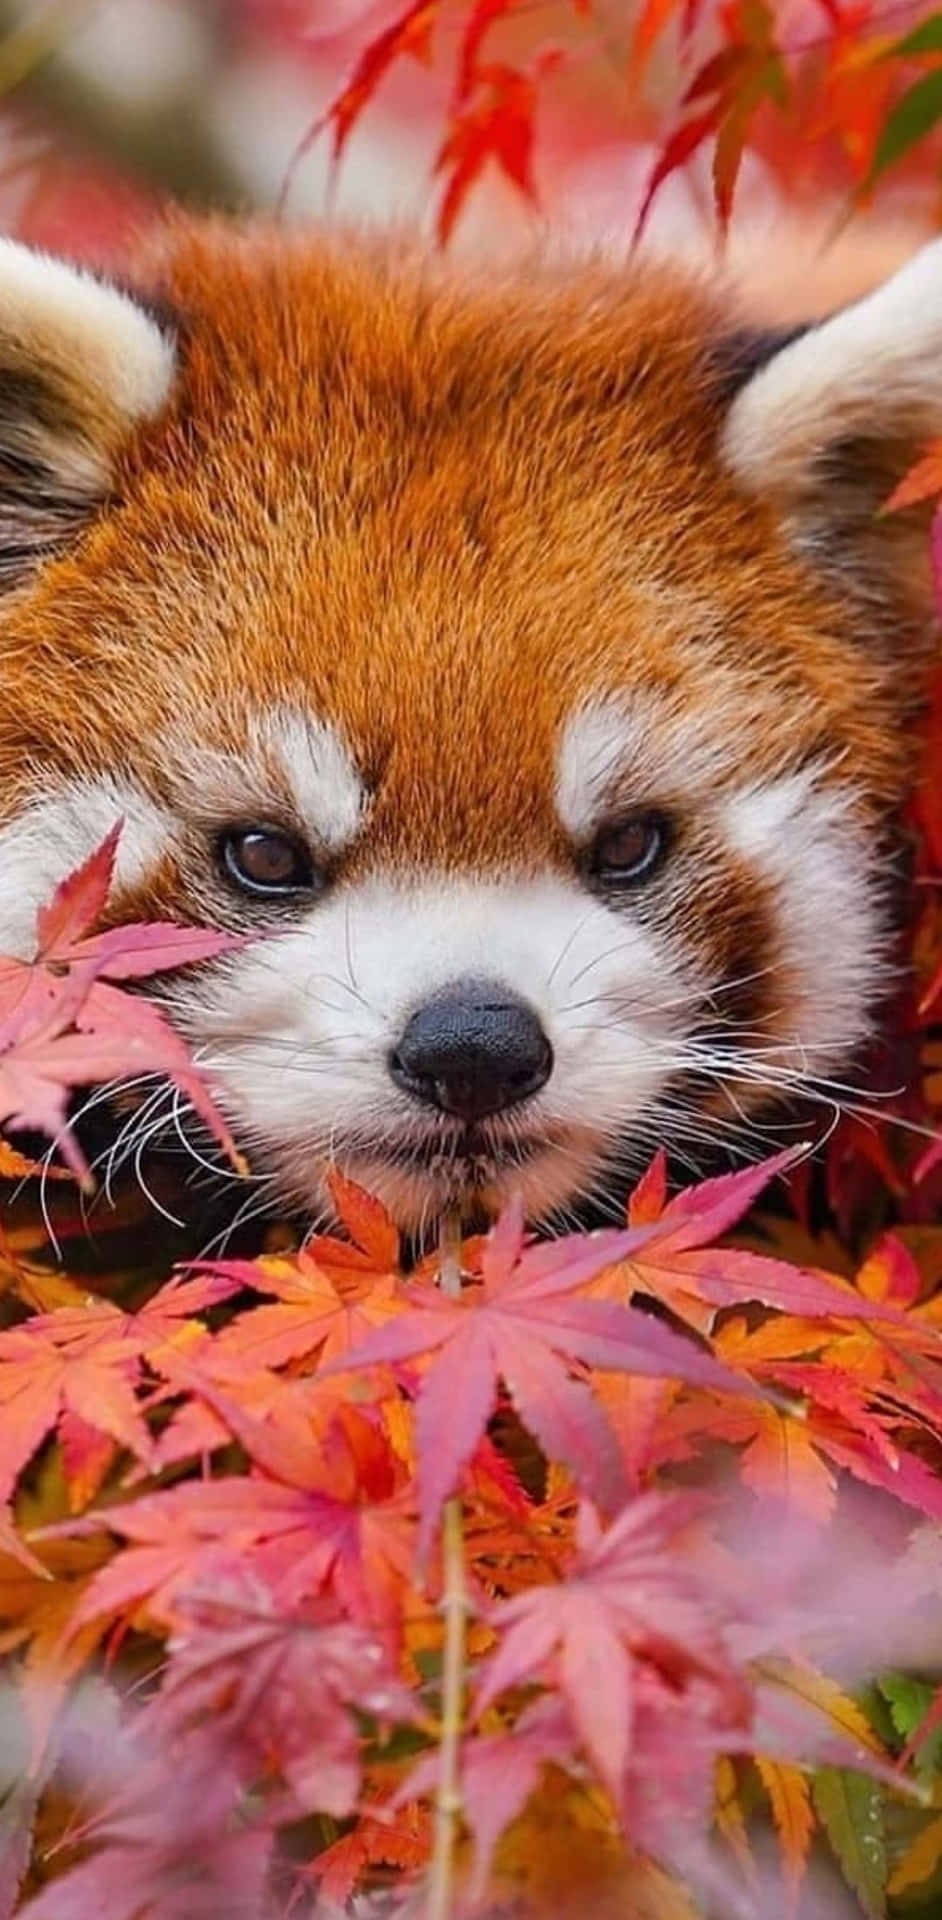 Cute Red Panda